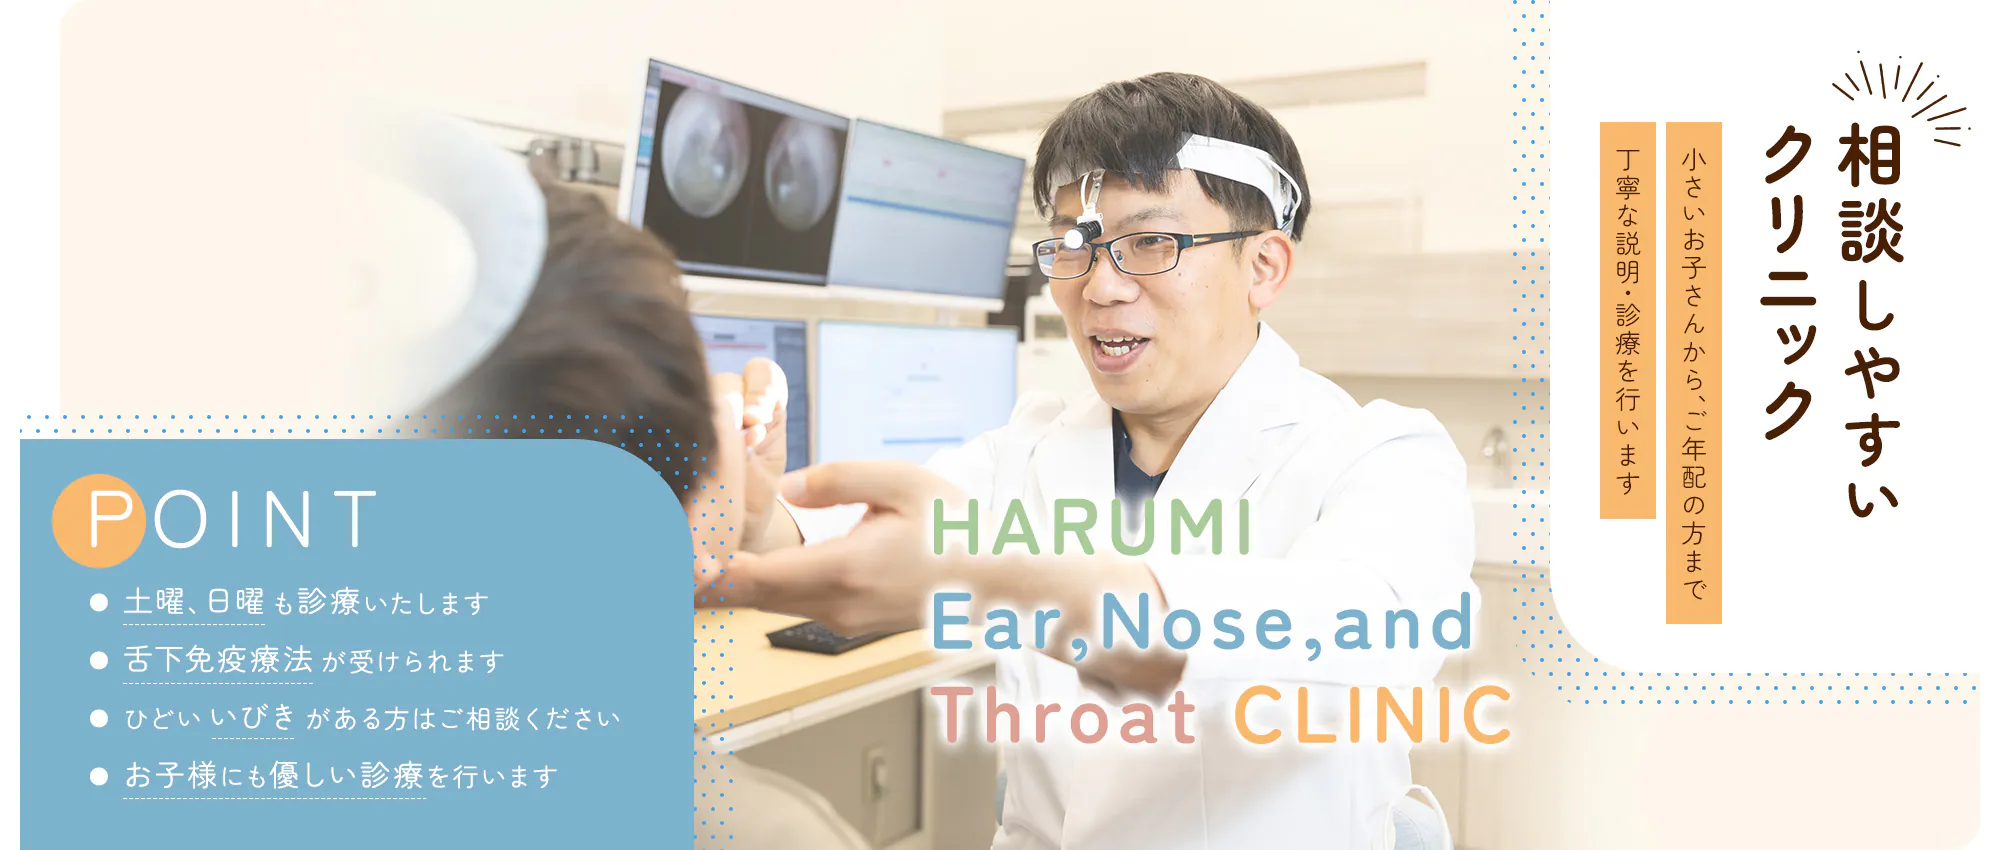 相談しやすい クリニック HARUMI Ear,Nose,and Throat CLINIC